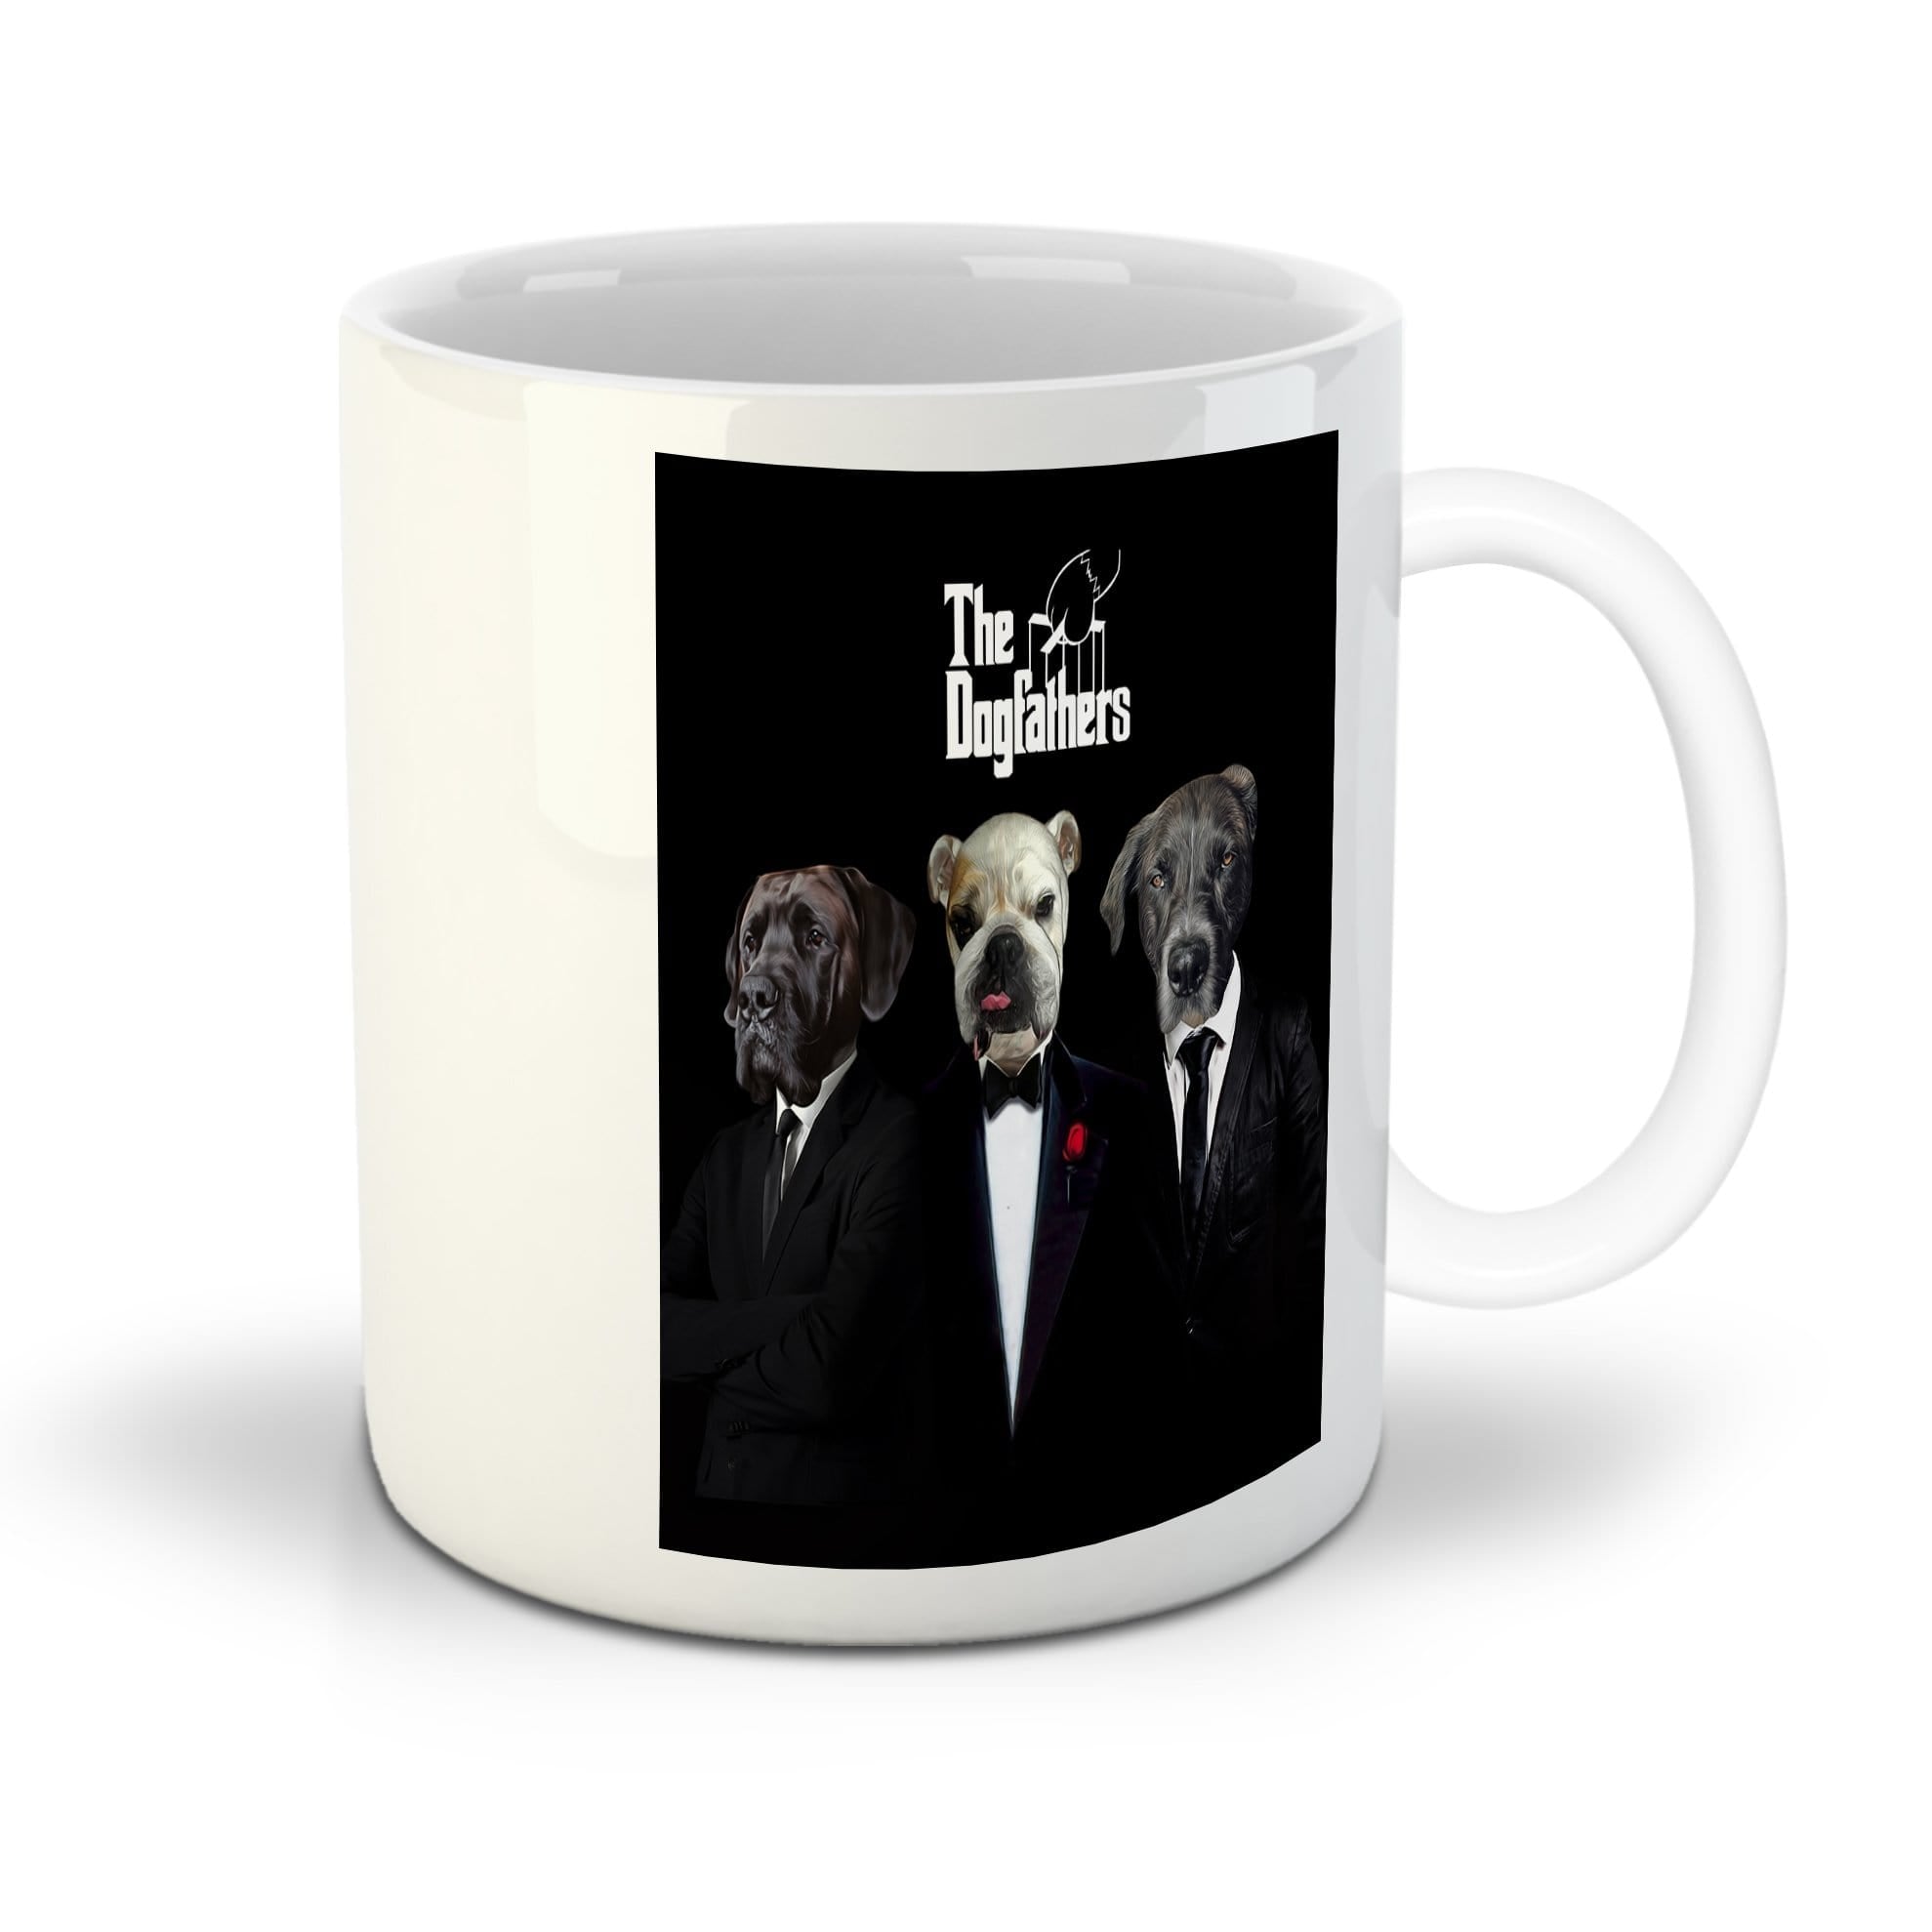 &#39;The Dogfathers&#39; Personalized 3 Pet Mug